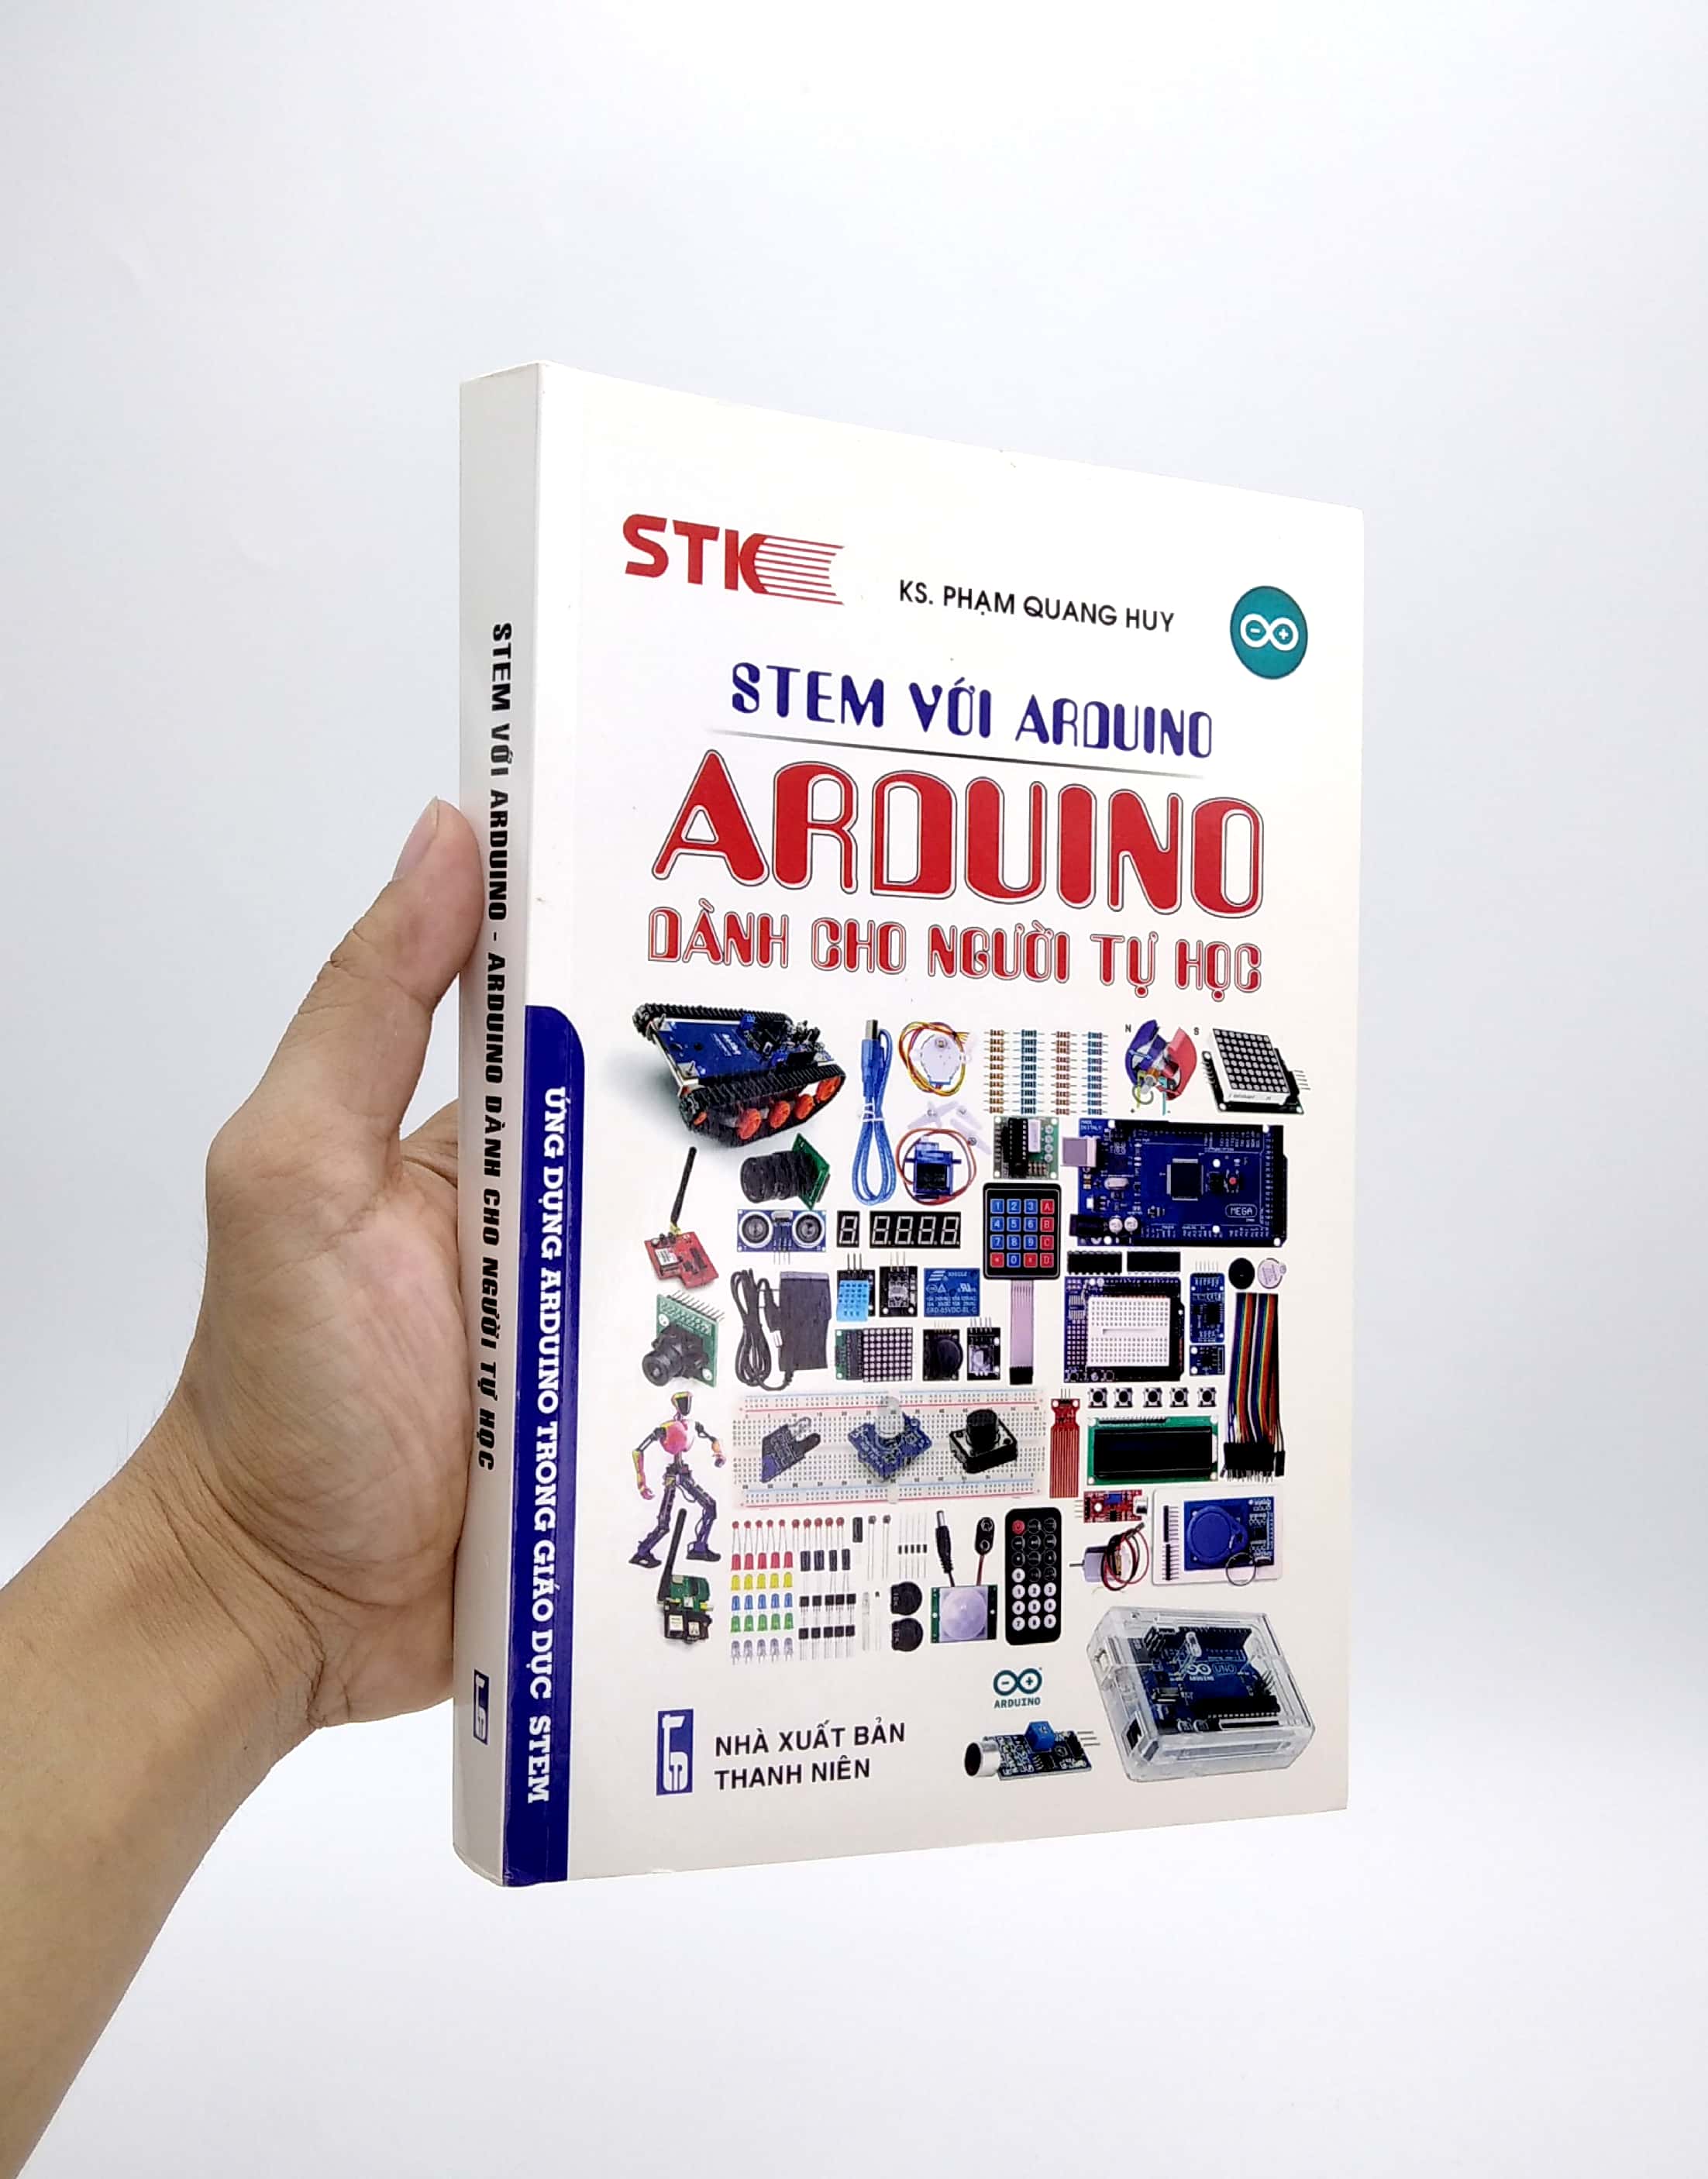 Stem Với Arduino - Arduino Dành Cho Người Tự Học PDF